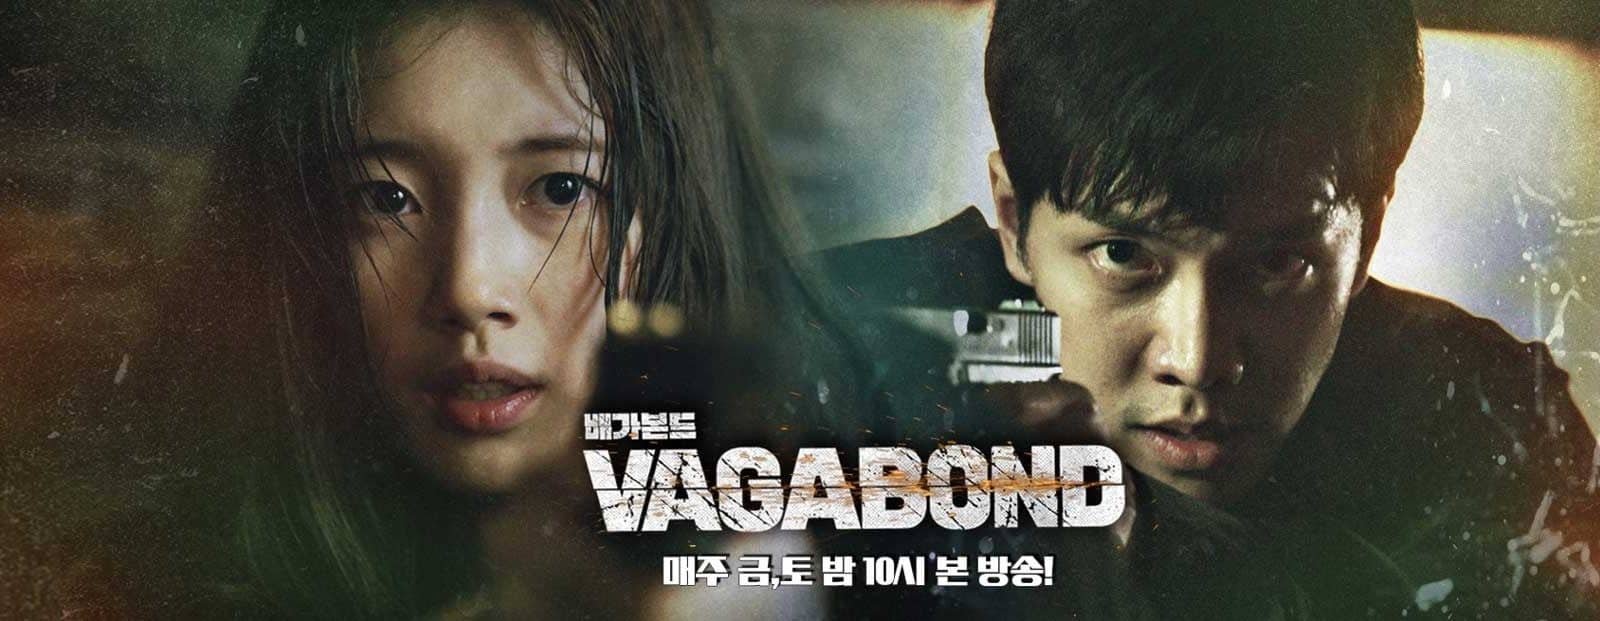 10 Dramas to watch like Vagabond